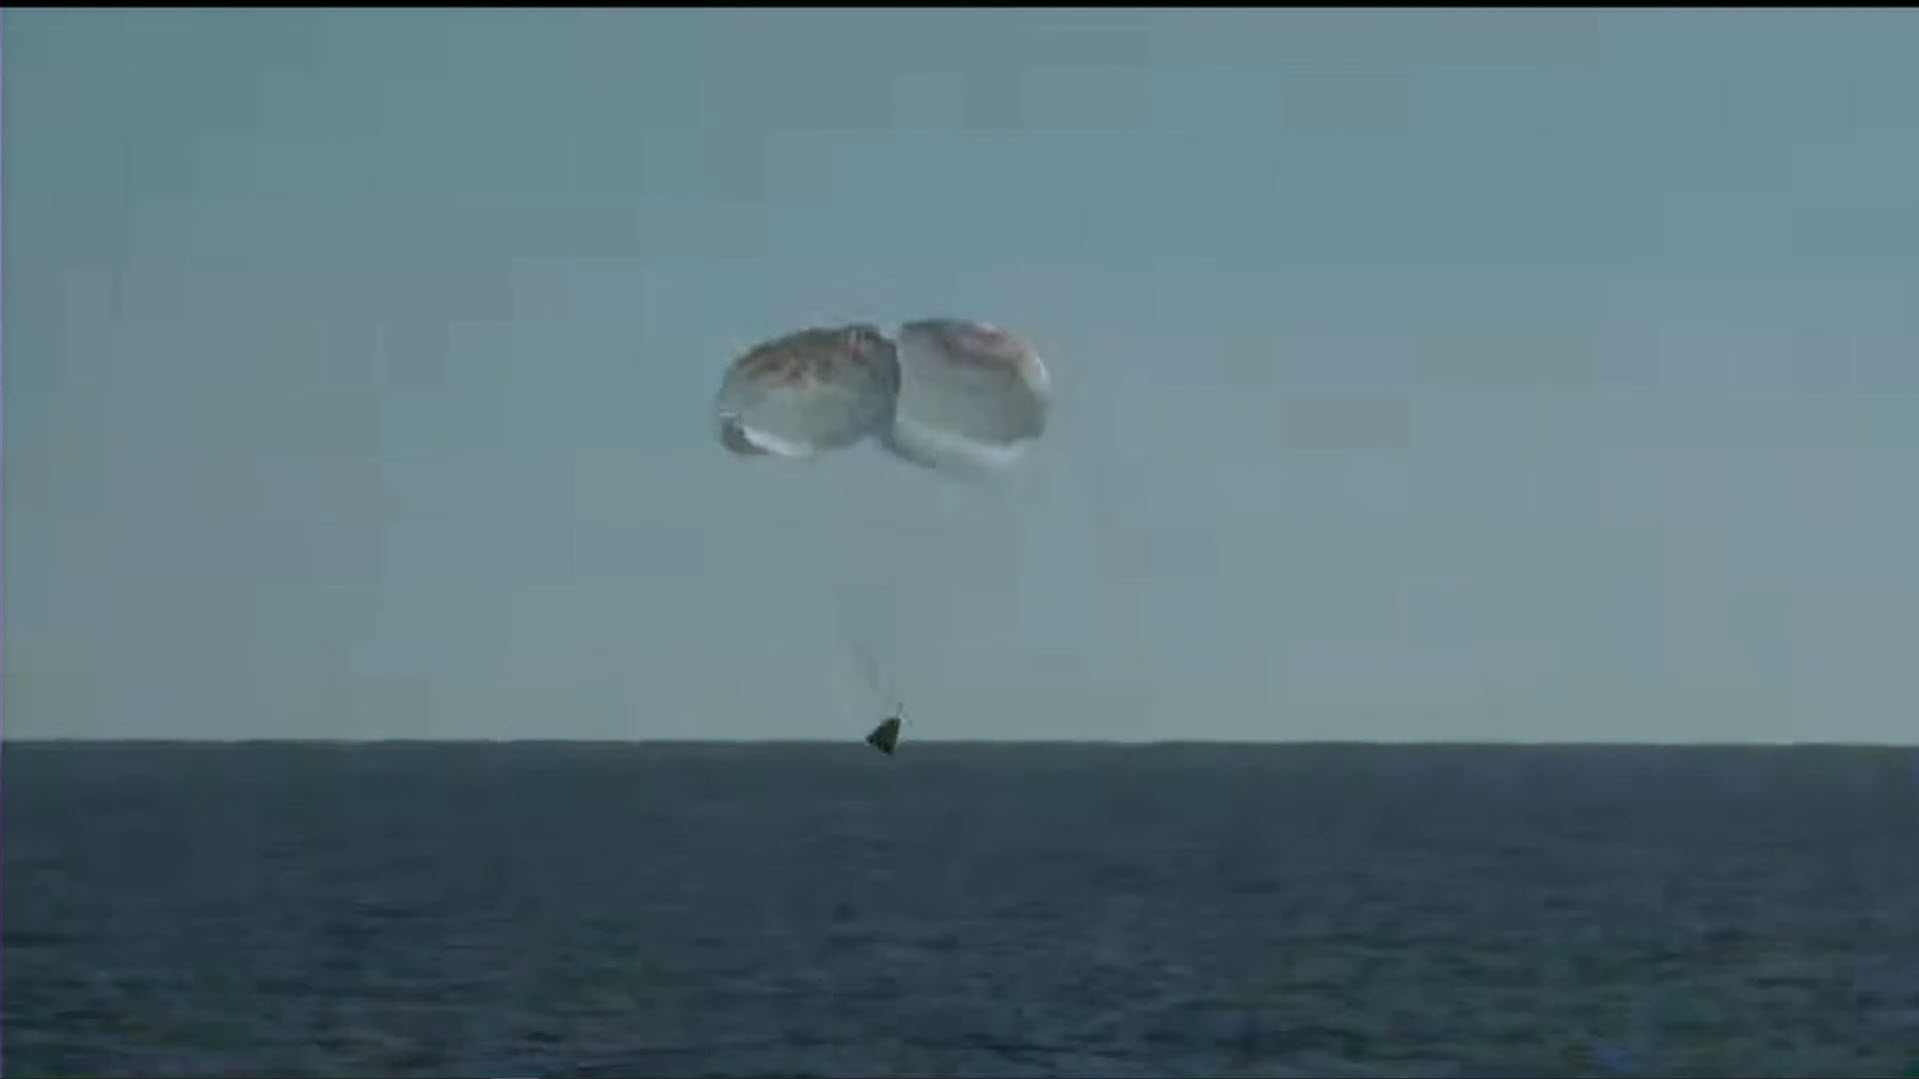 แคปซูล Crew Dragon ของ SpaceX นำ 4 นักบินอวกาศในภารกิจ Crew-4 กลับสู่โลกอย่างปลอดภัย